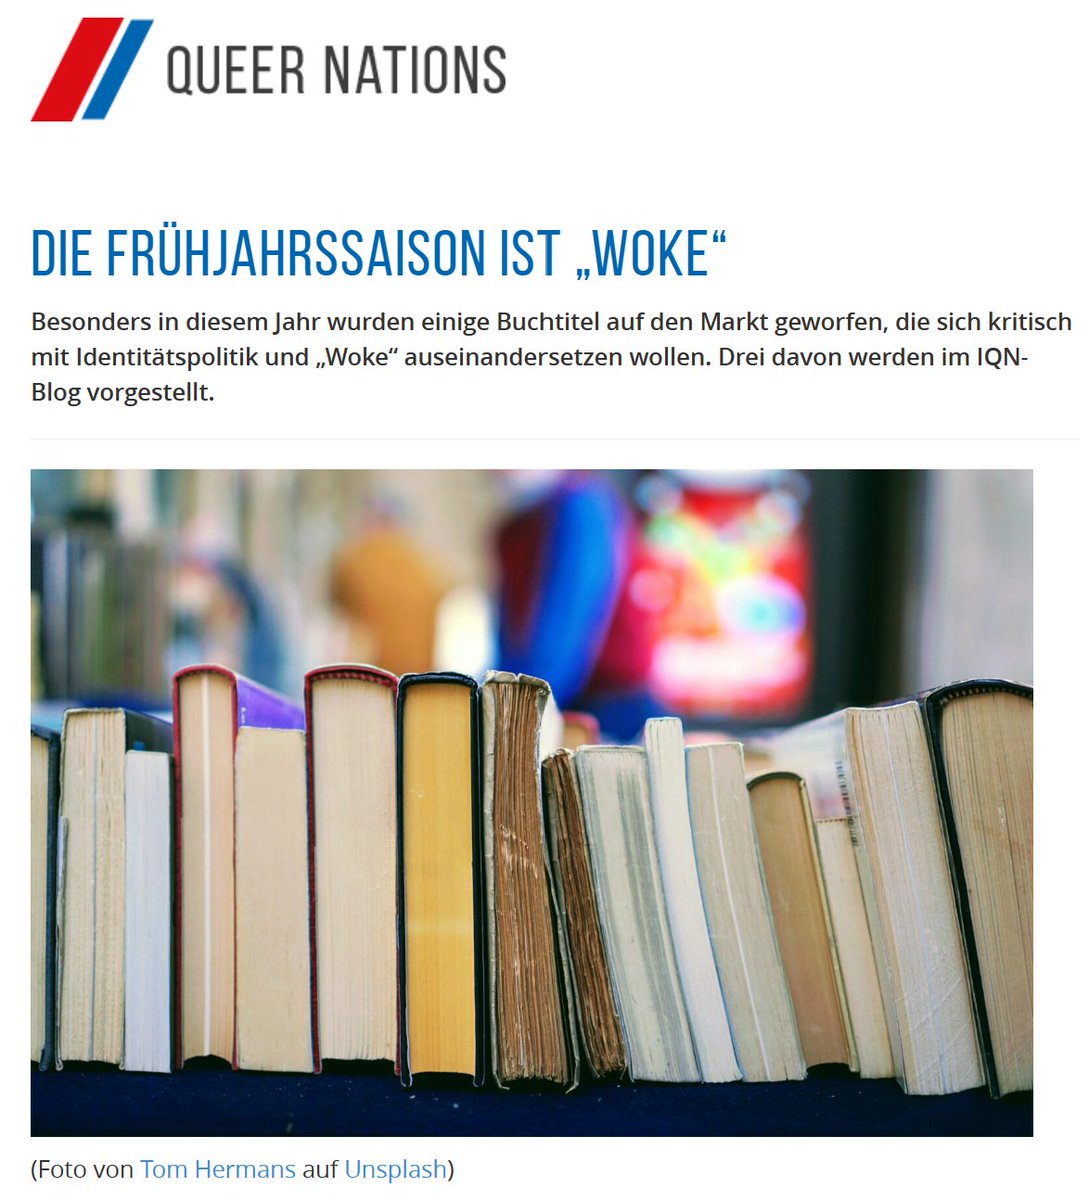 Meine Rezension zu drei 'Woke'-Büchern ist jetzt online: queernations.de/die-fruehjahrs…